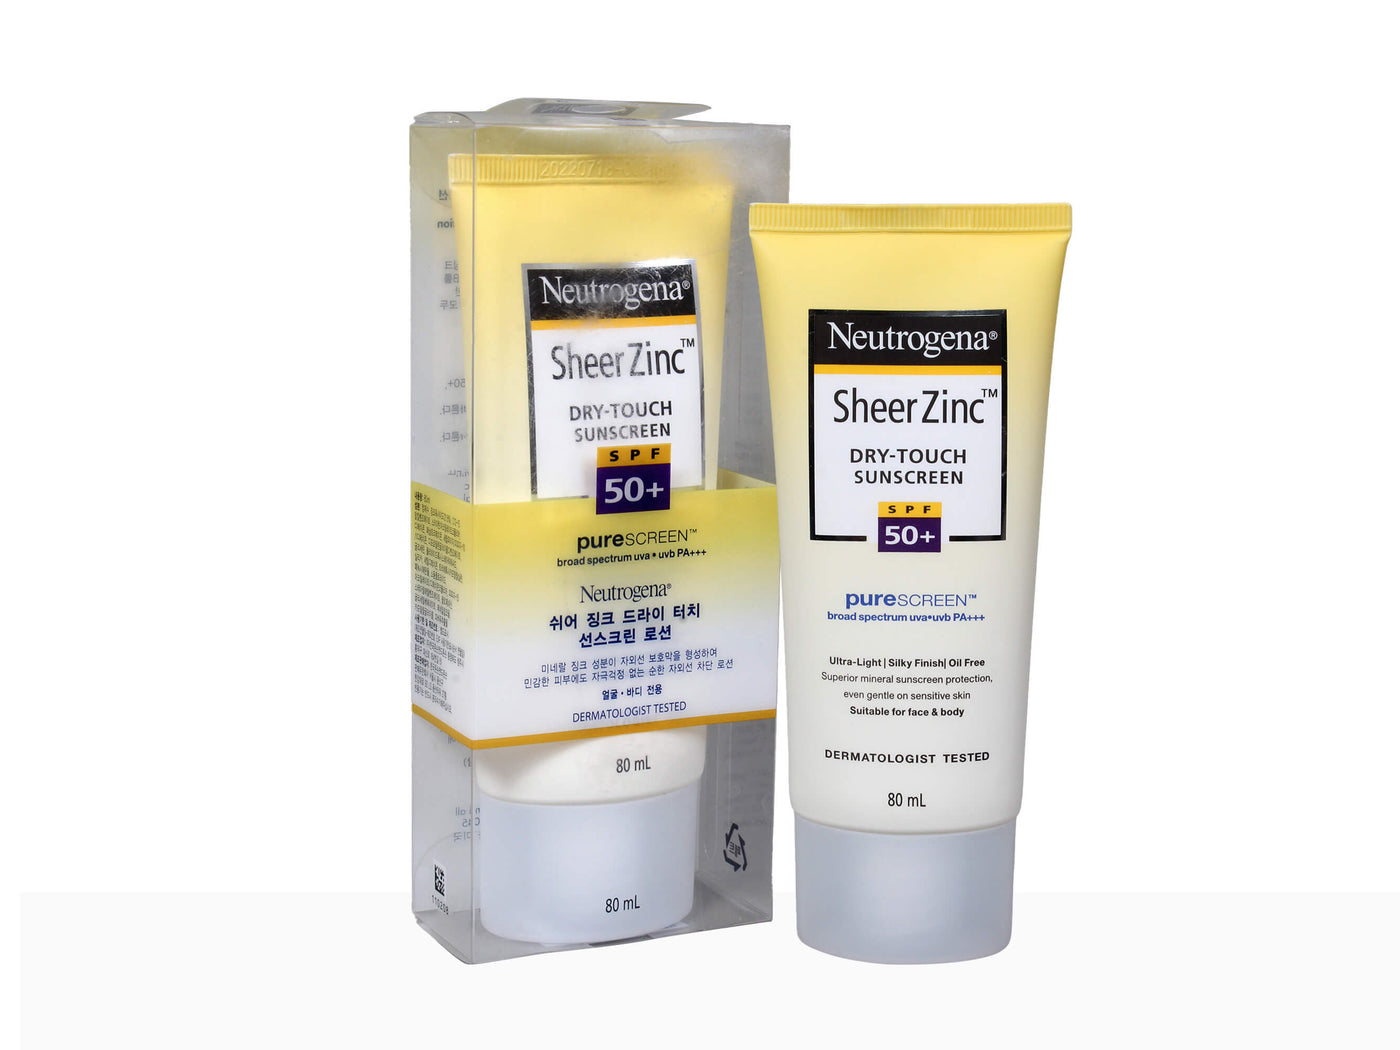 Neutrogena Sheer Zinc Sunscreen SPF 50+ - Clinikally